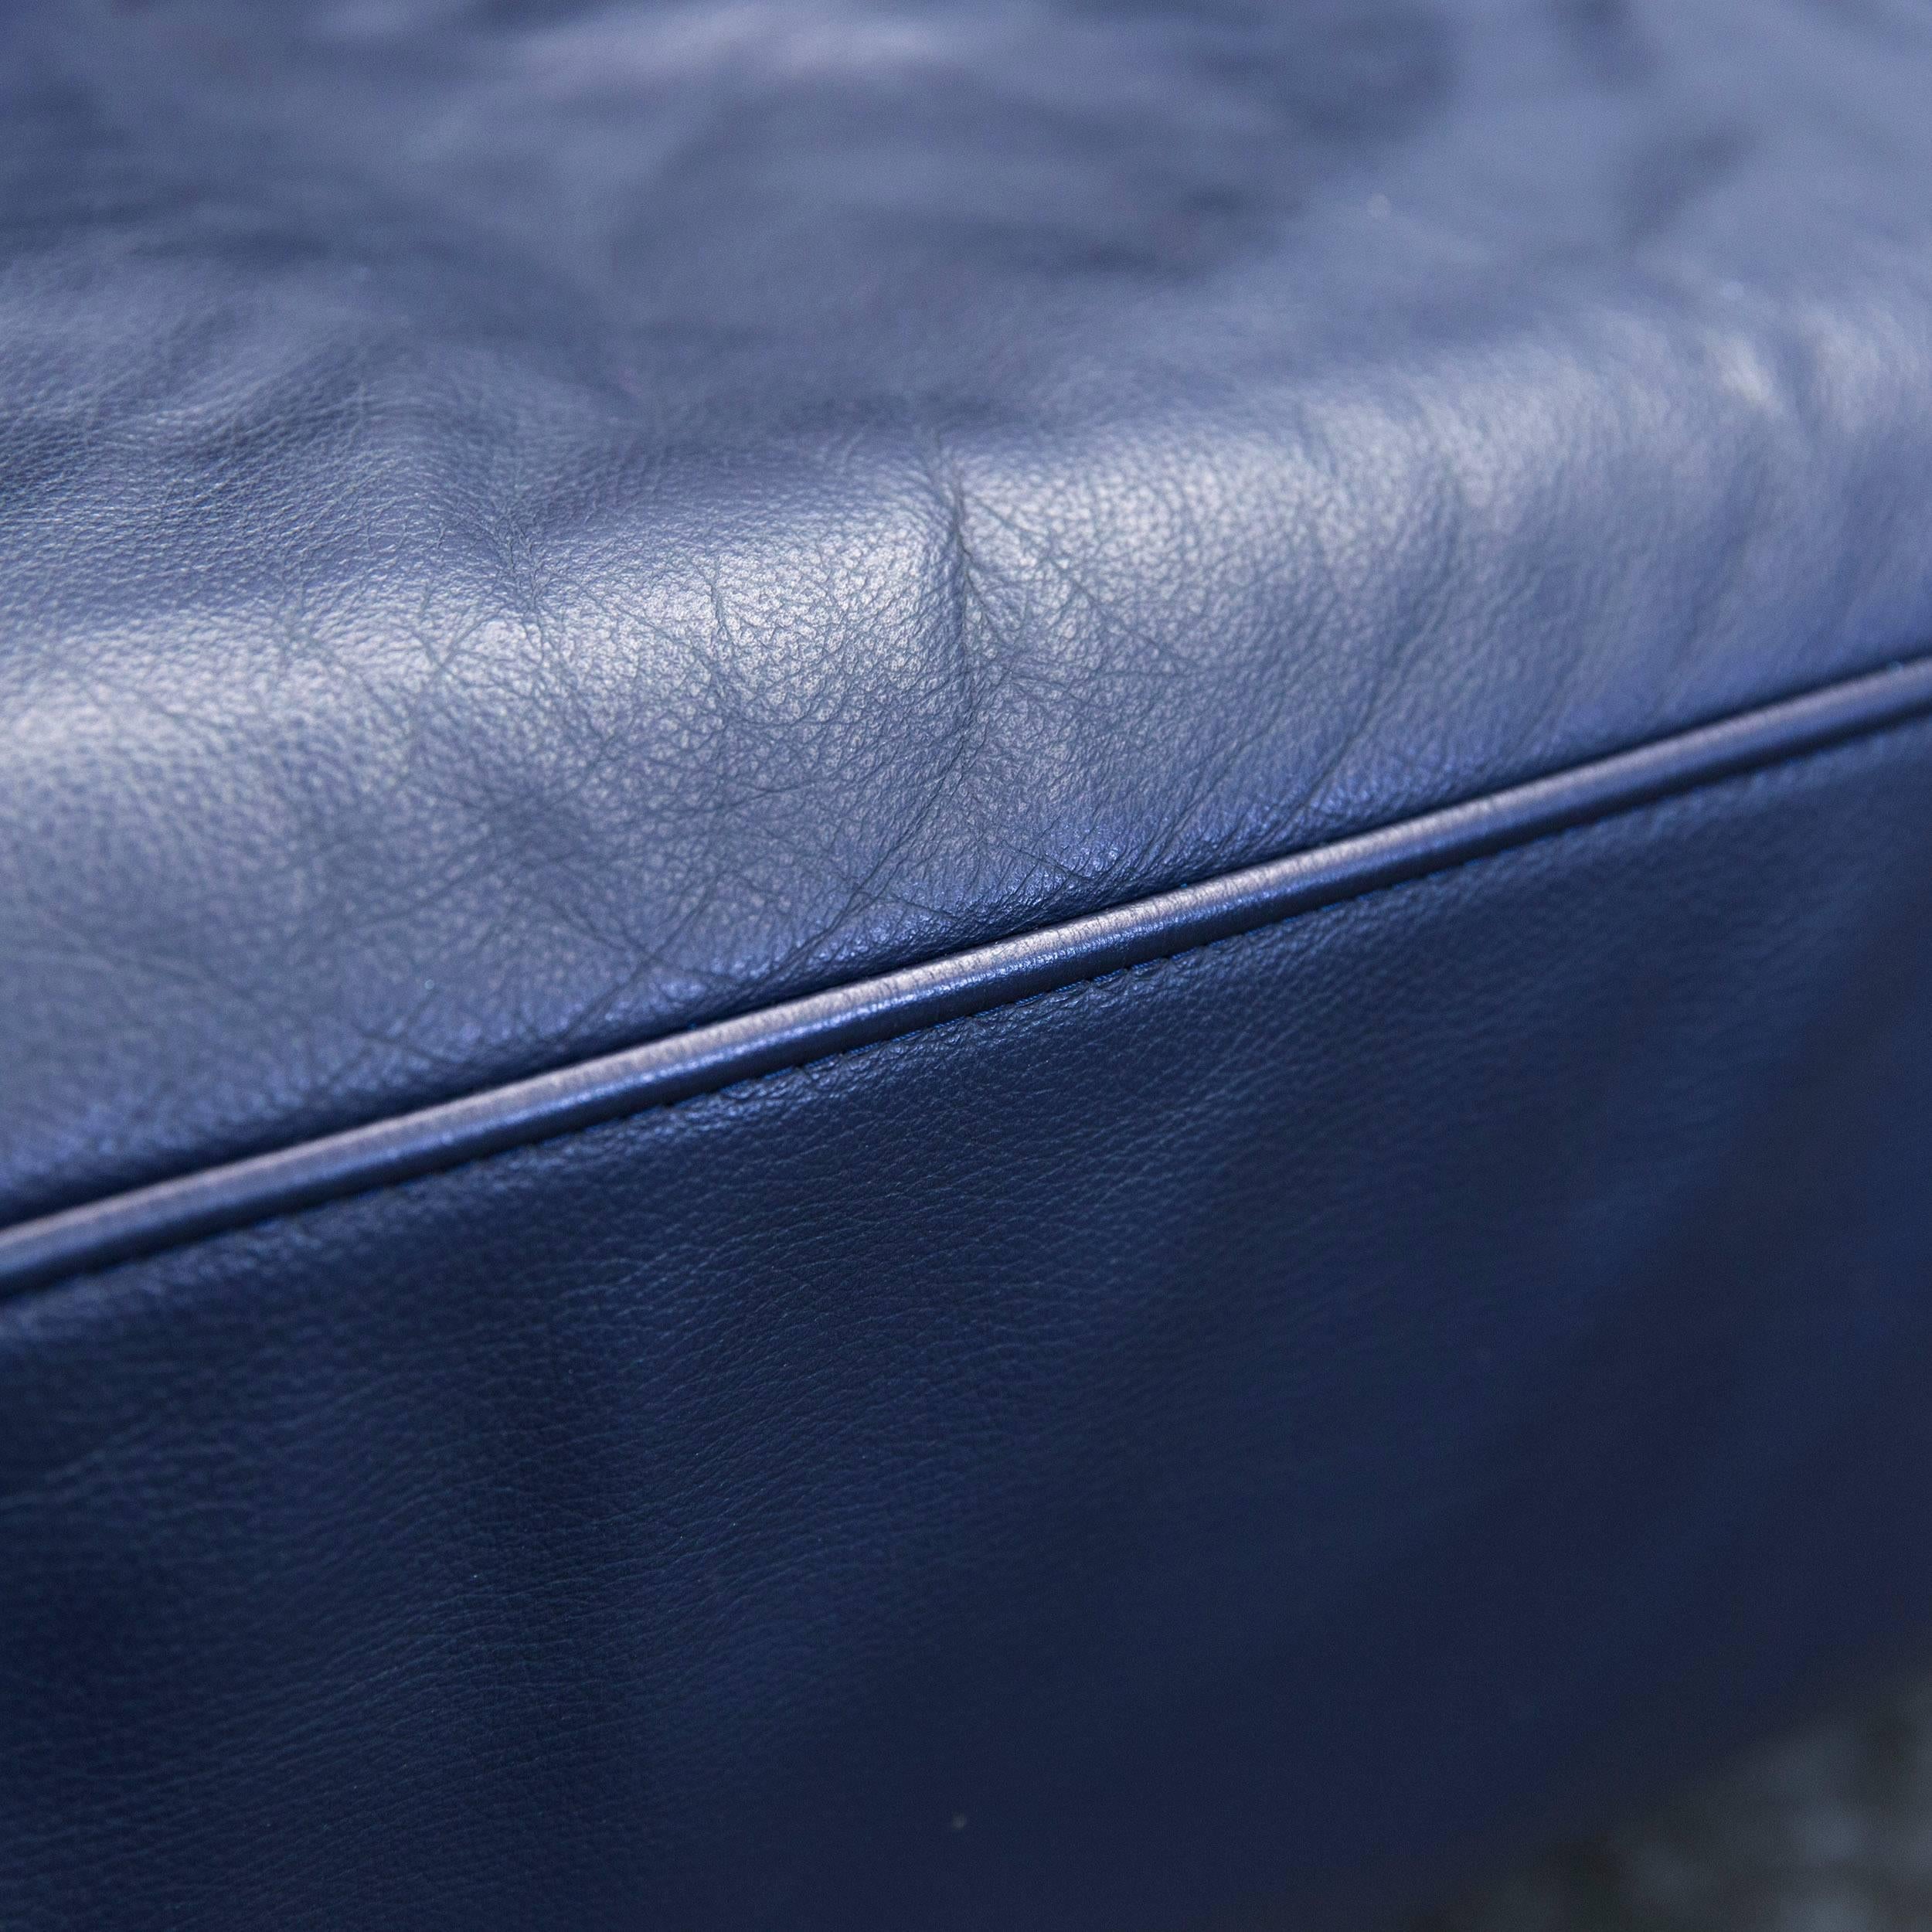 German Rolf Benz Dono Designer Sofa Aubergine Leather Three-Seat Couch Modern